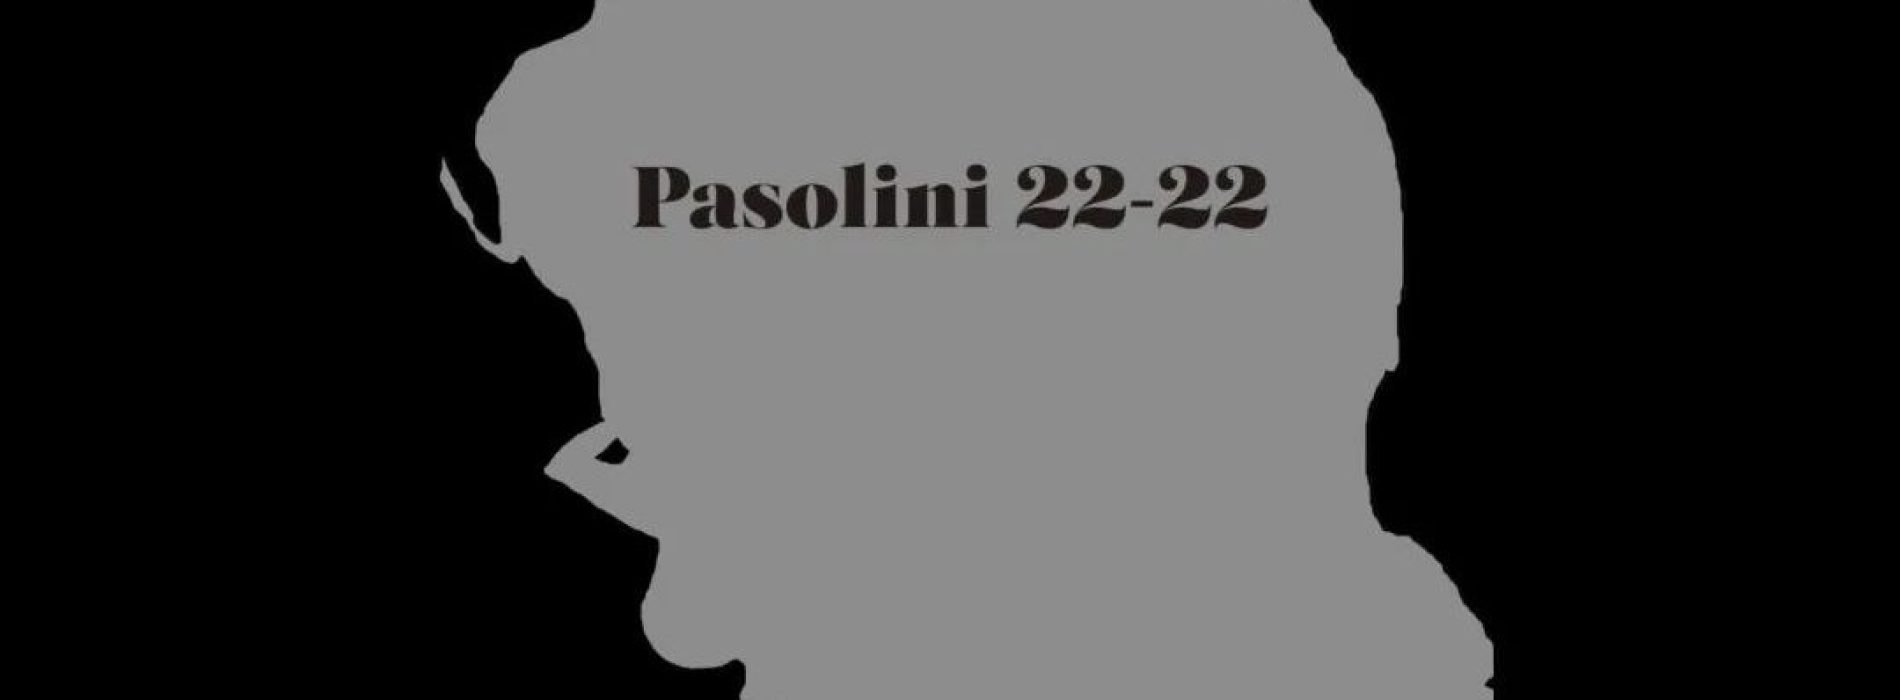 Pasolini 22-22, va in Spagna l’omaggio degli artisti campani